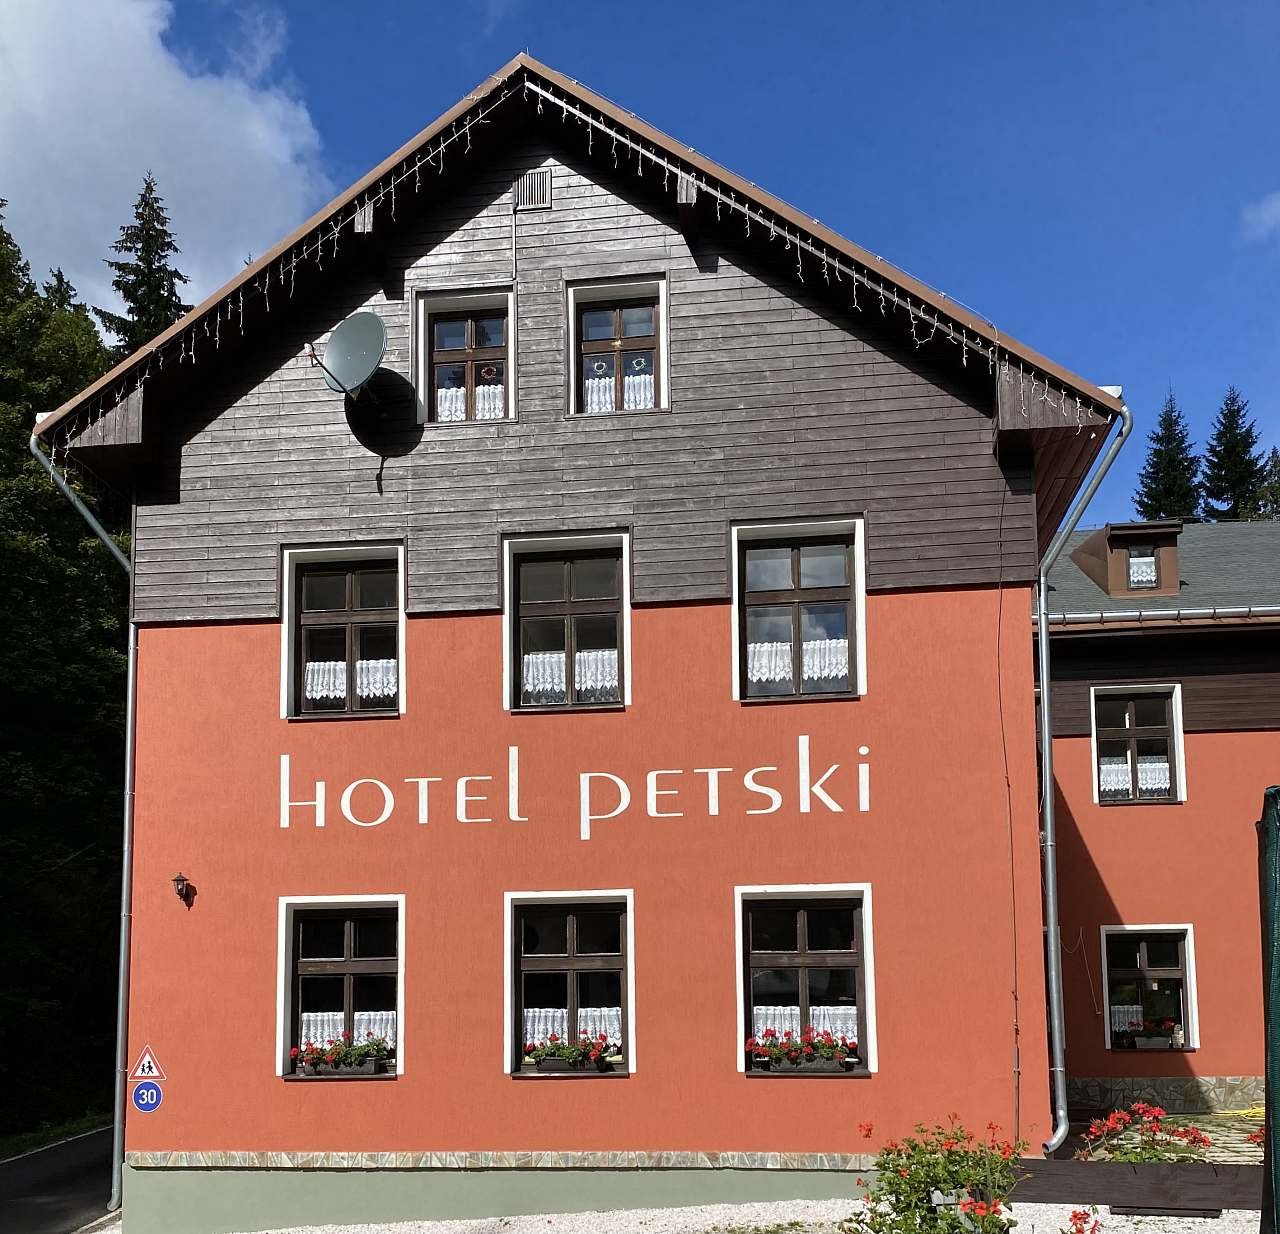 Hotel Petski